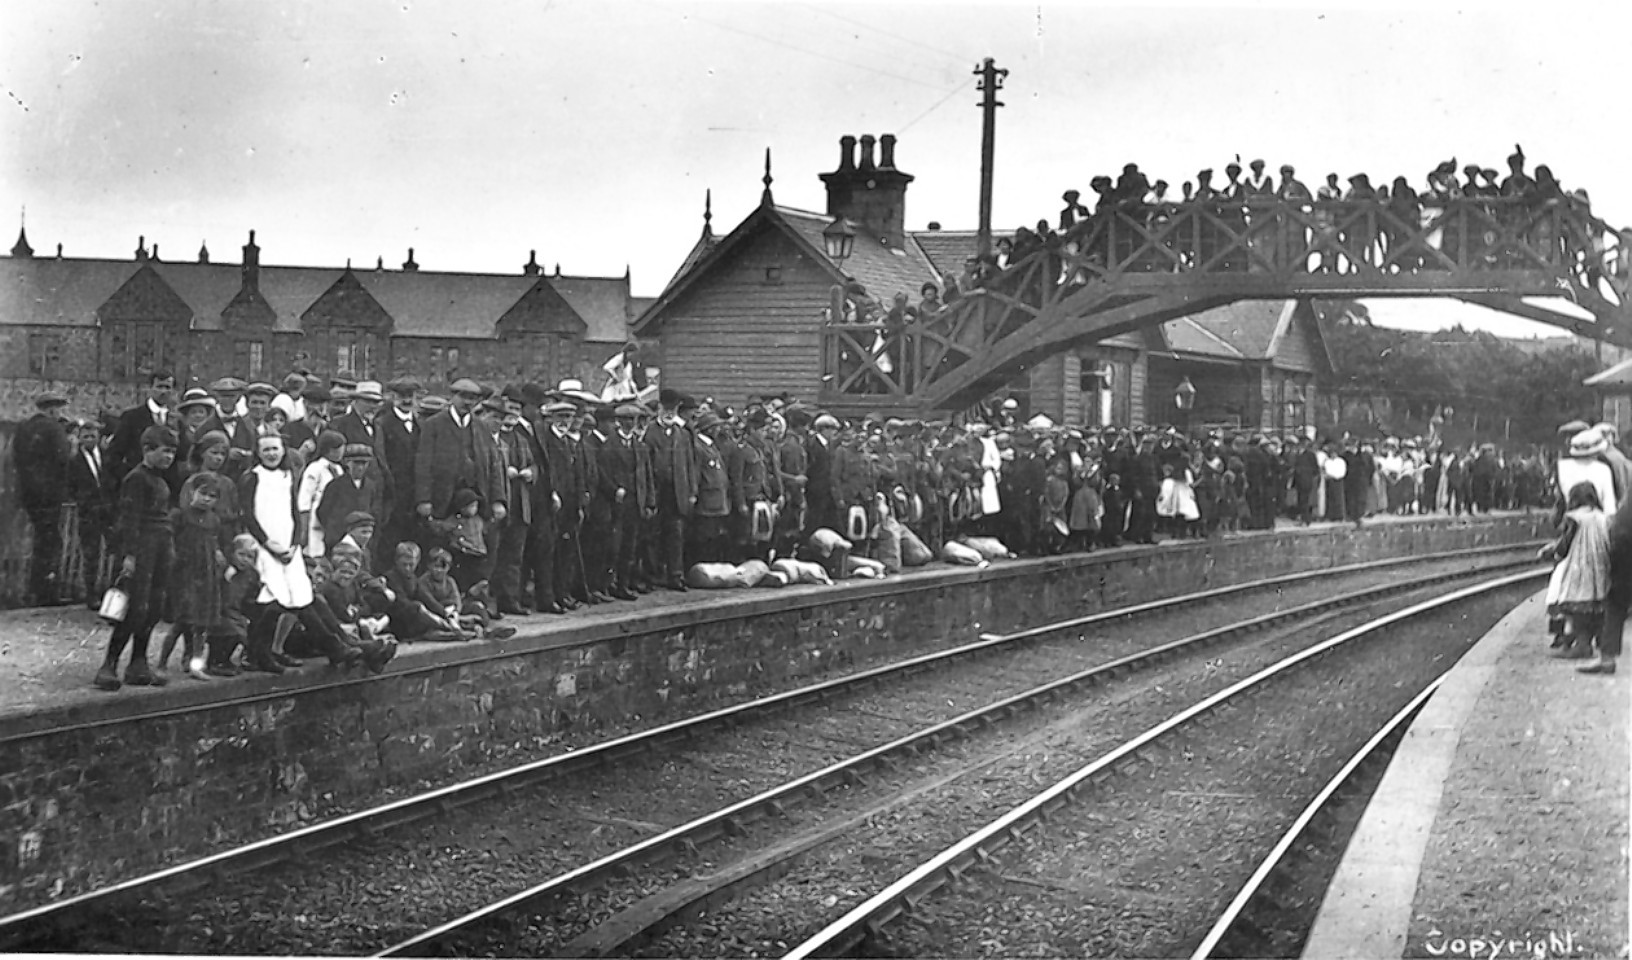 Portsoy Station in 1914